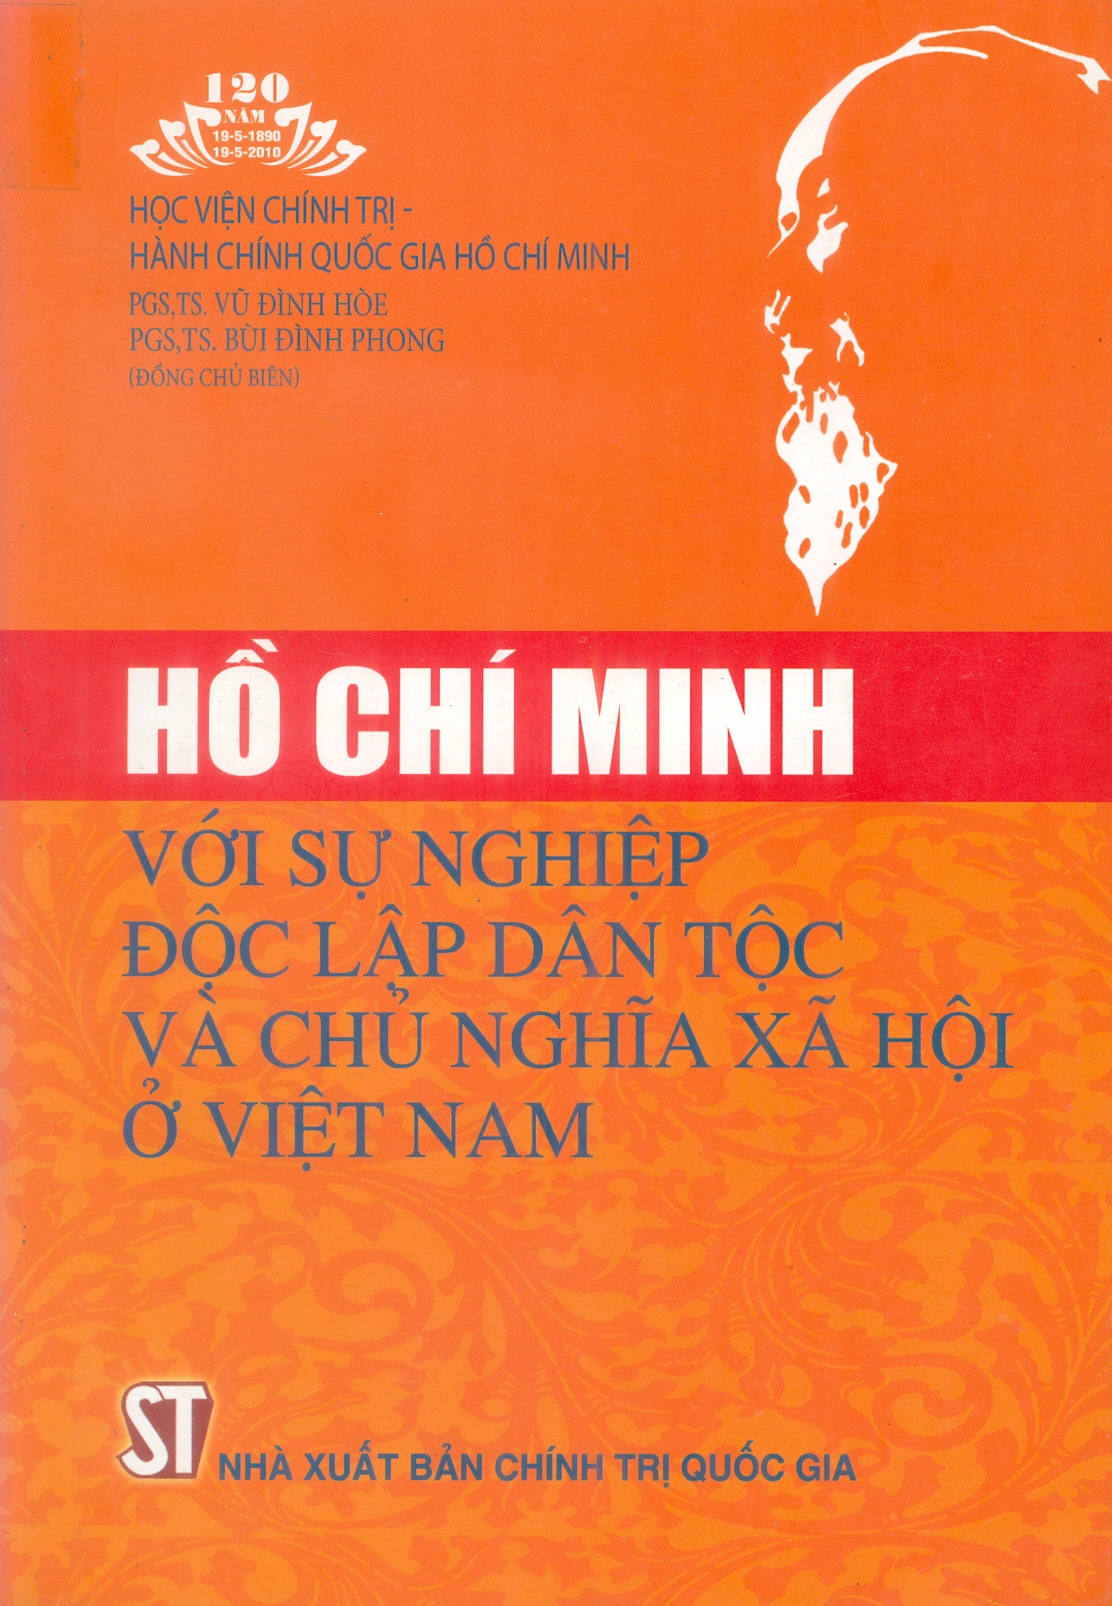 Hồ Chí Minh với sự nghiệp độc lập dân tộc và chủ nghĩa xã hội ở Việt Nam